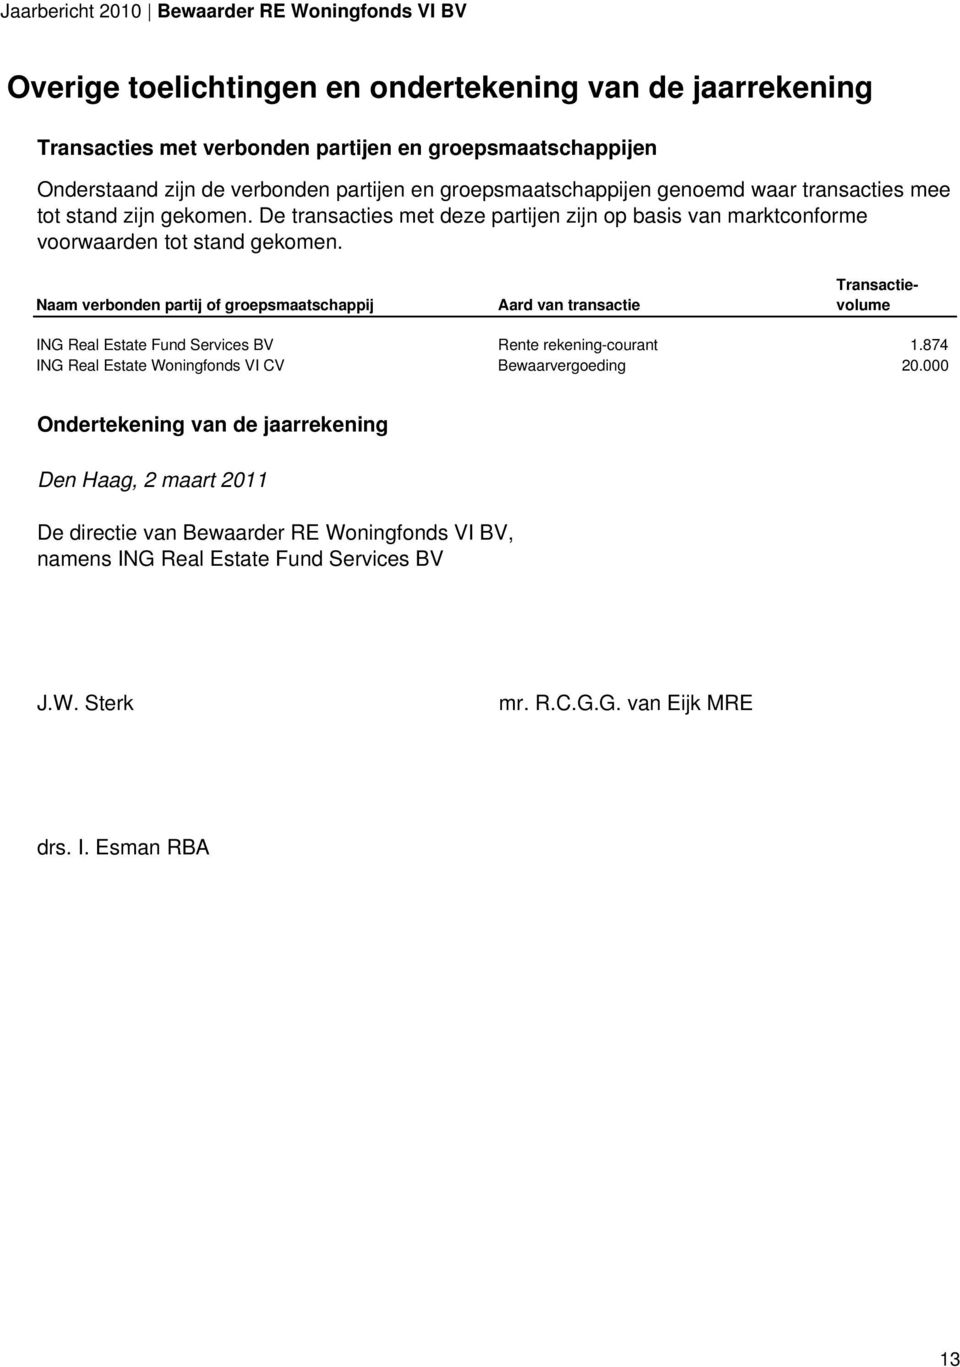 Naam verbonden partij of groepsmaatschappij Aard van transactie Transactievolume ING Real Estate Fund Services BV Rente rekening-courant 1.